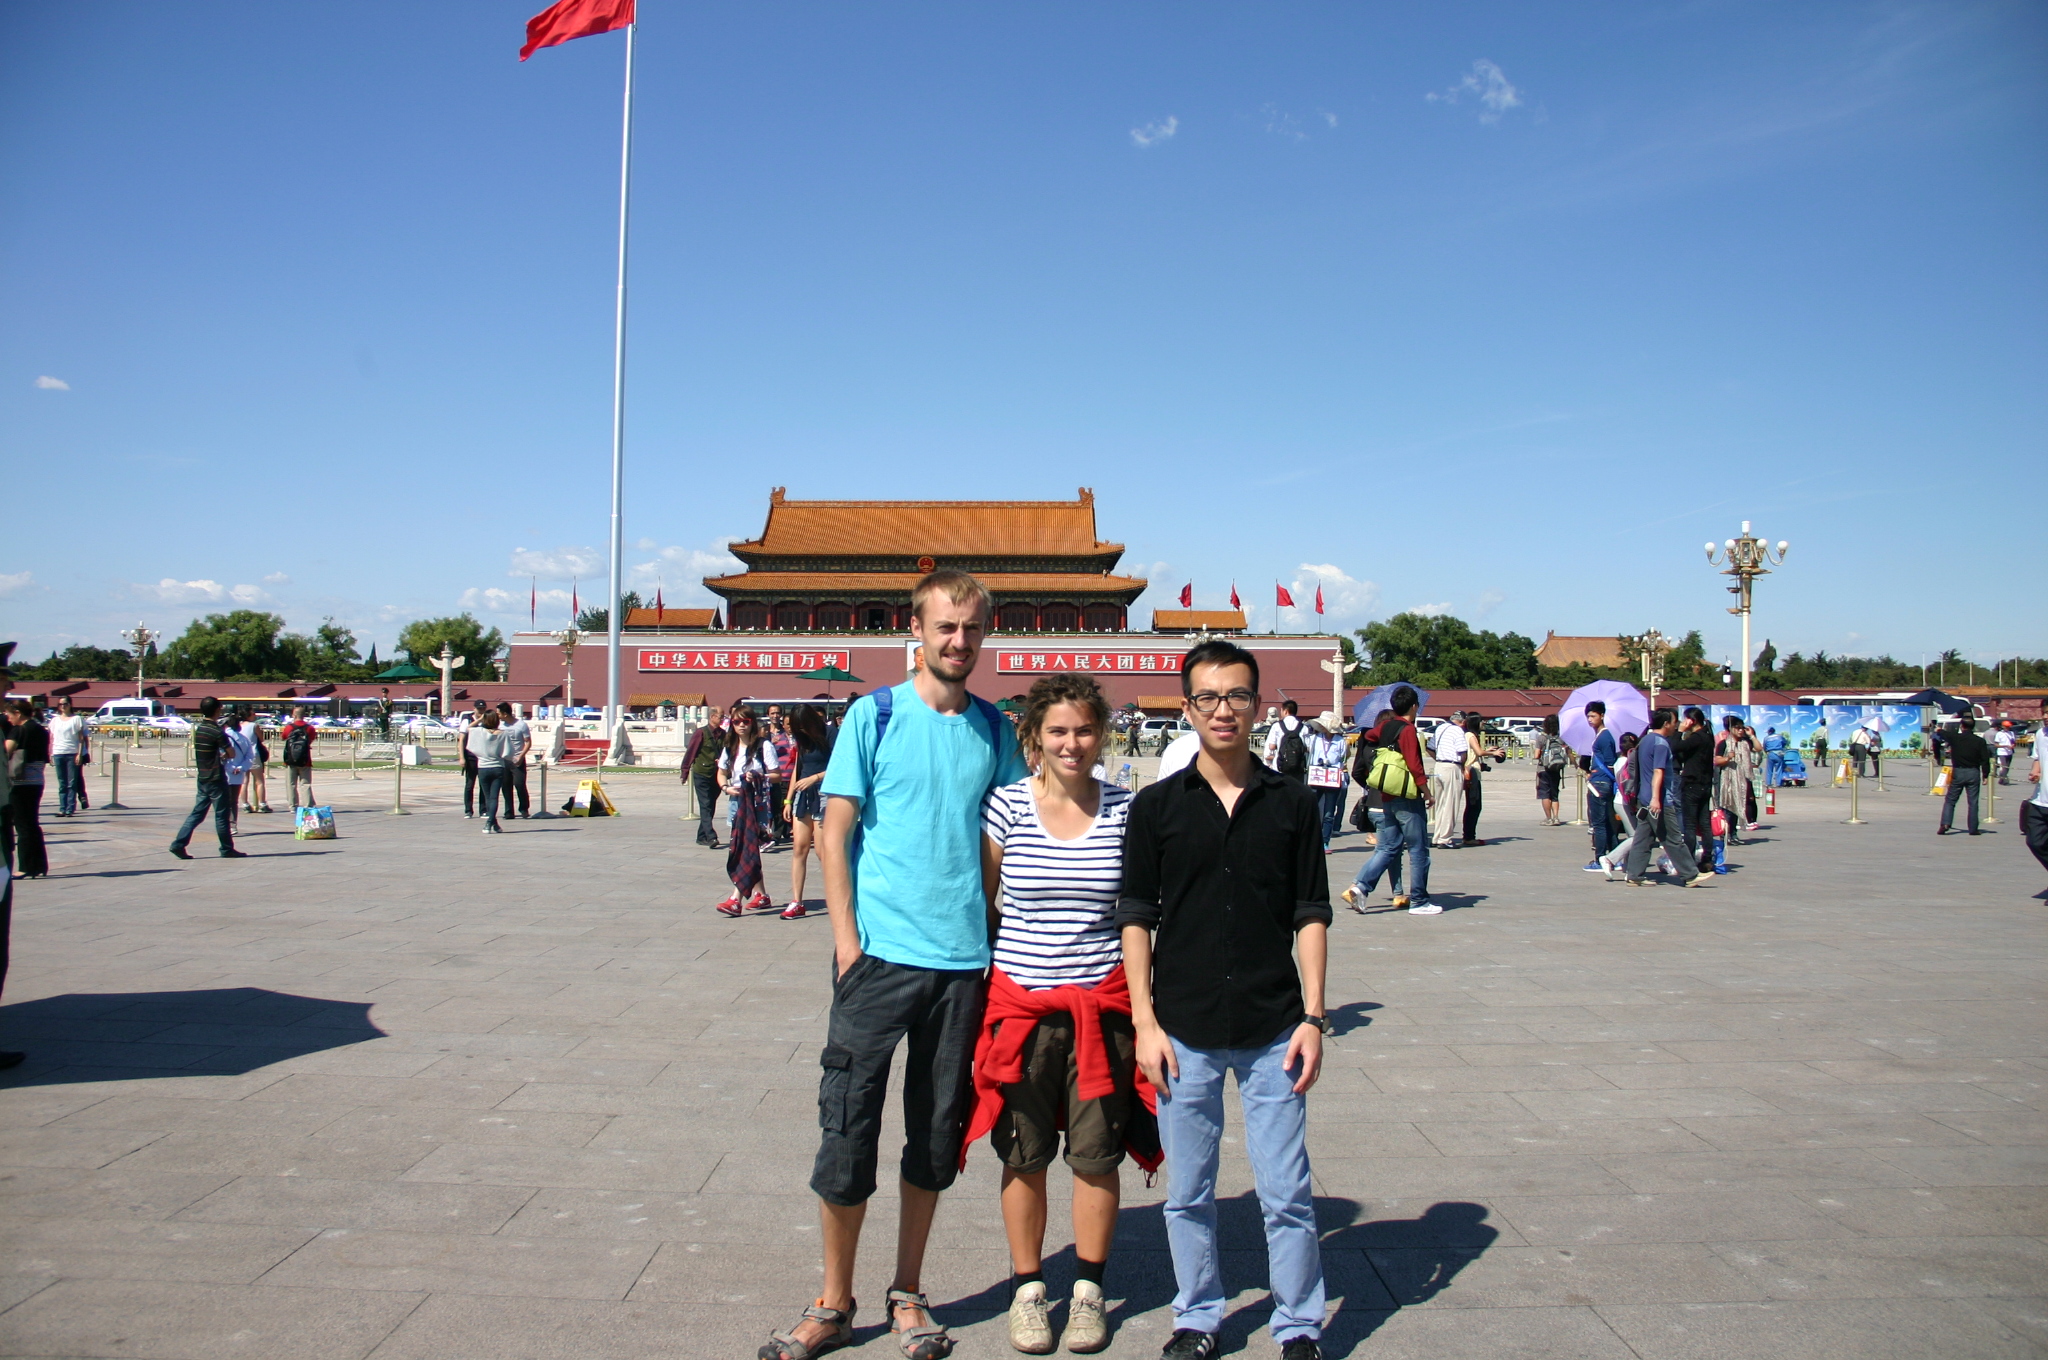 На главной площади Пекина с нашим хостом по имени Форрест